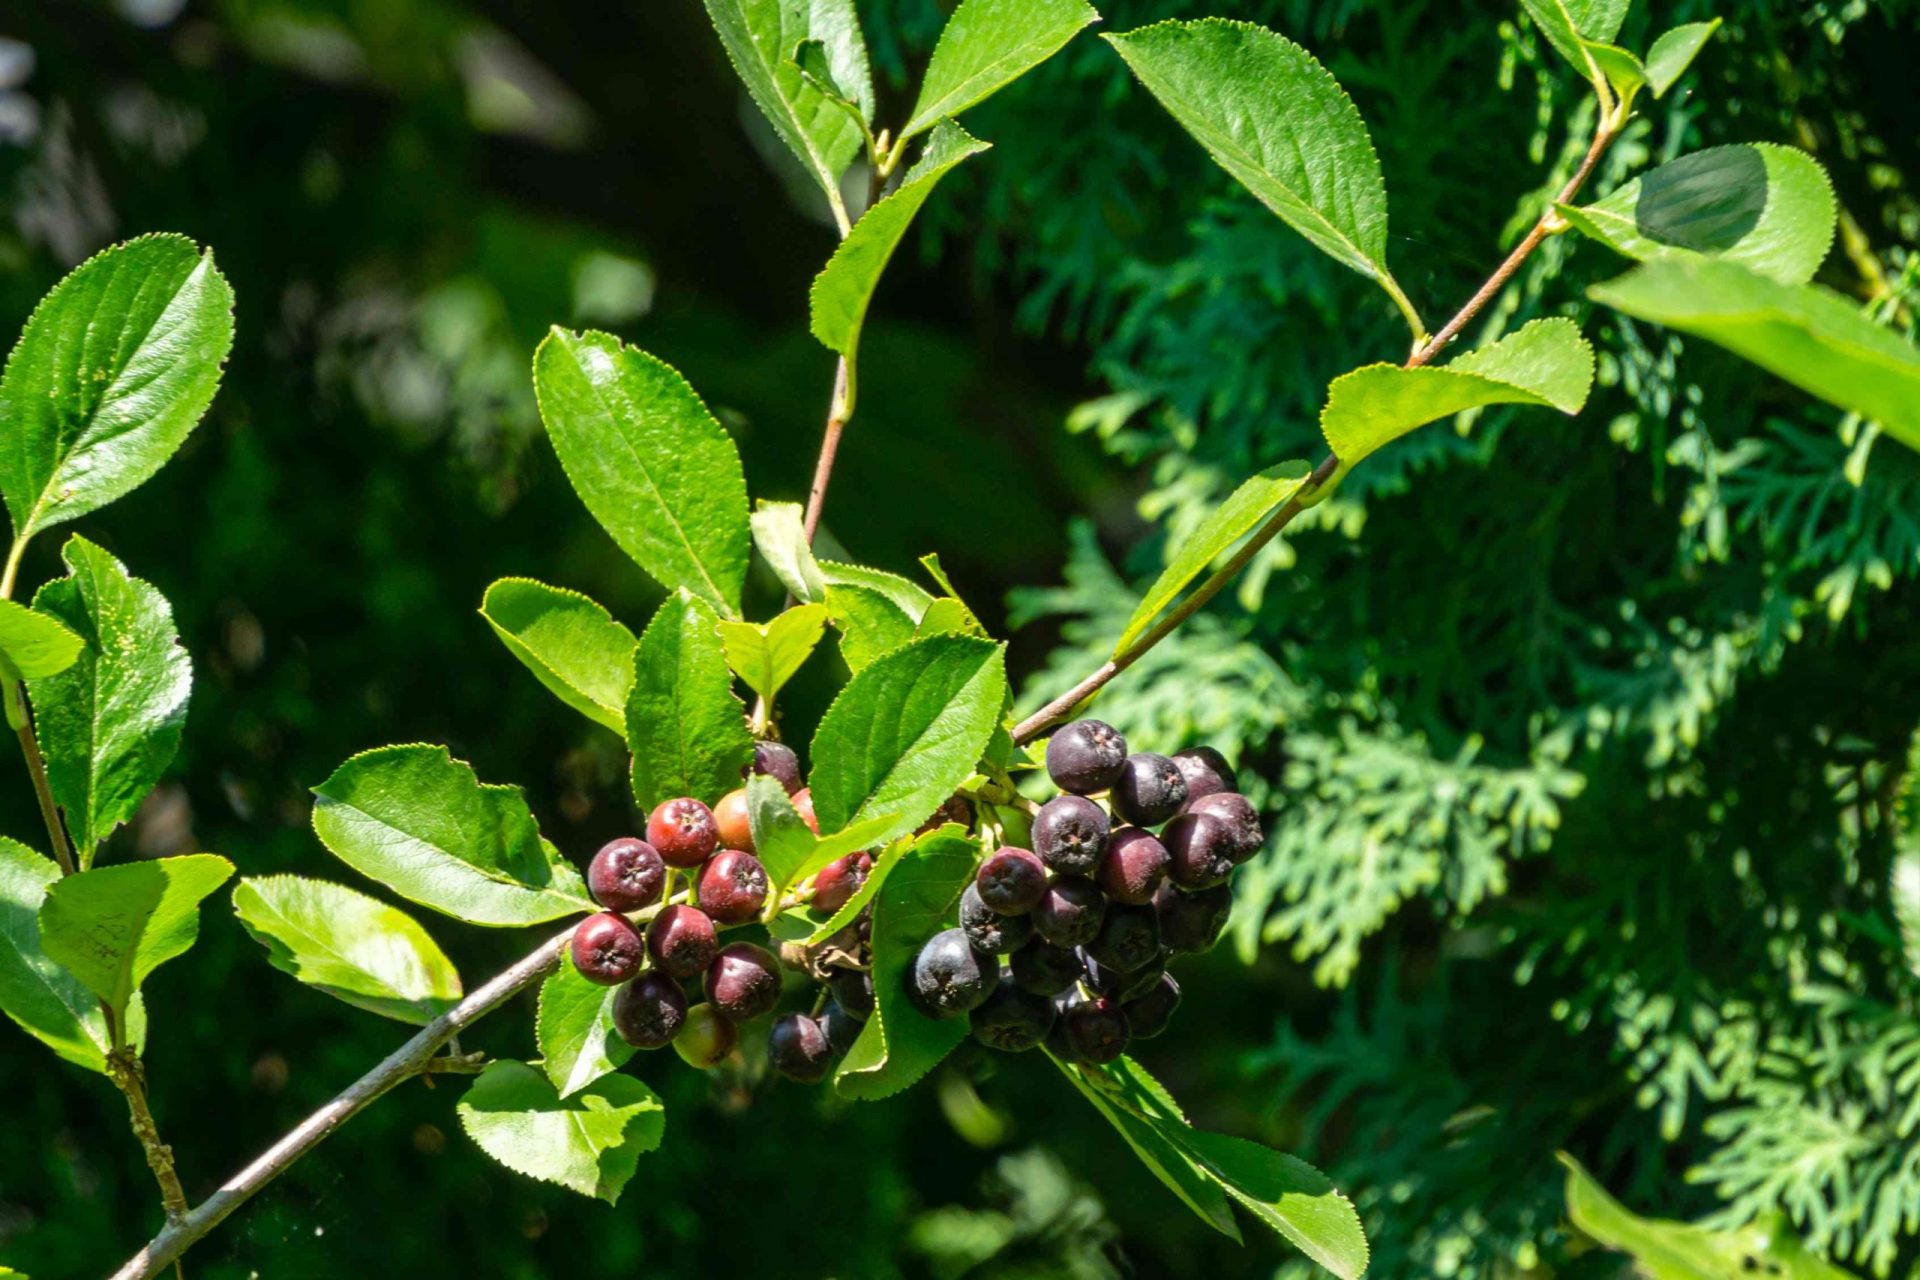 Planta canadiense de serviceberry con bayas de color rojo oscuro y morado